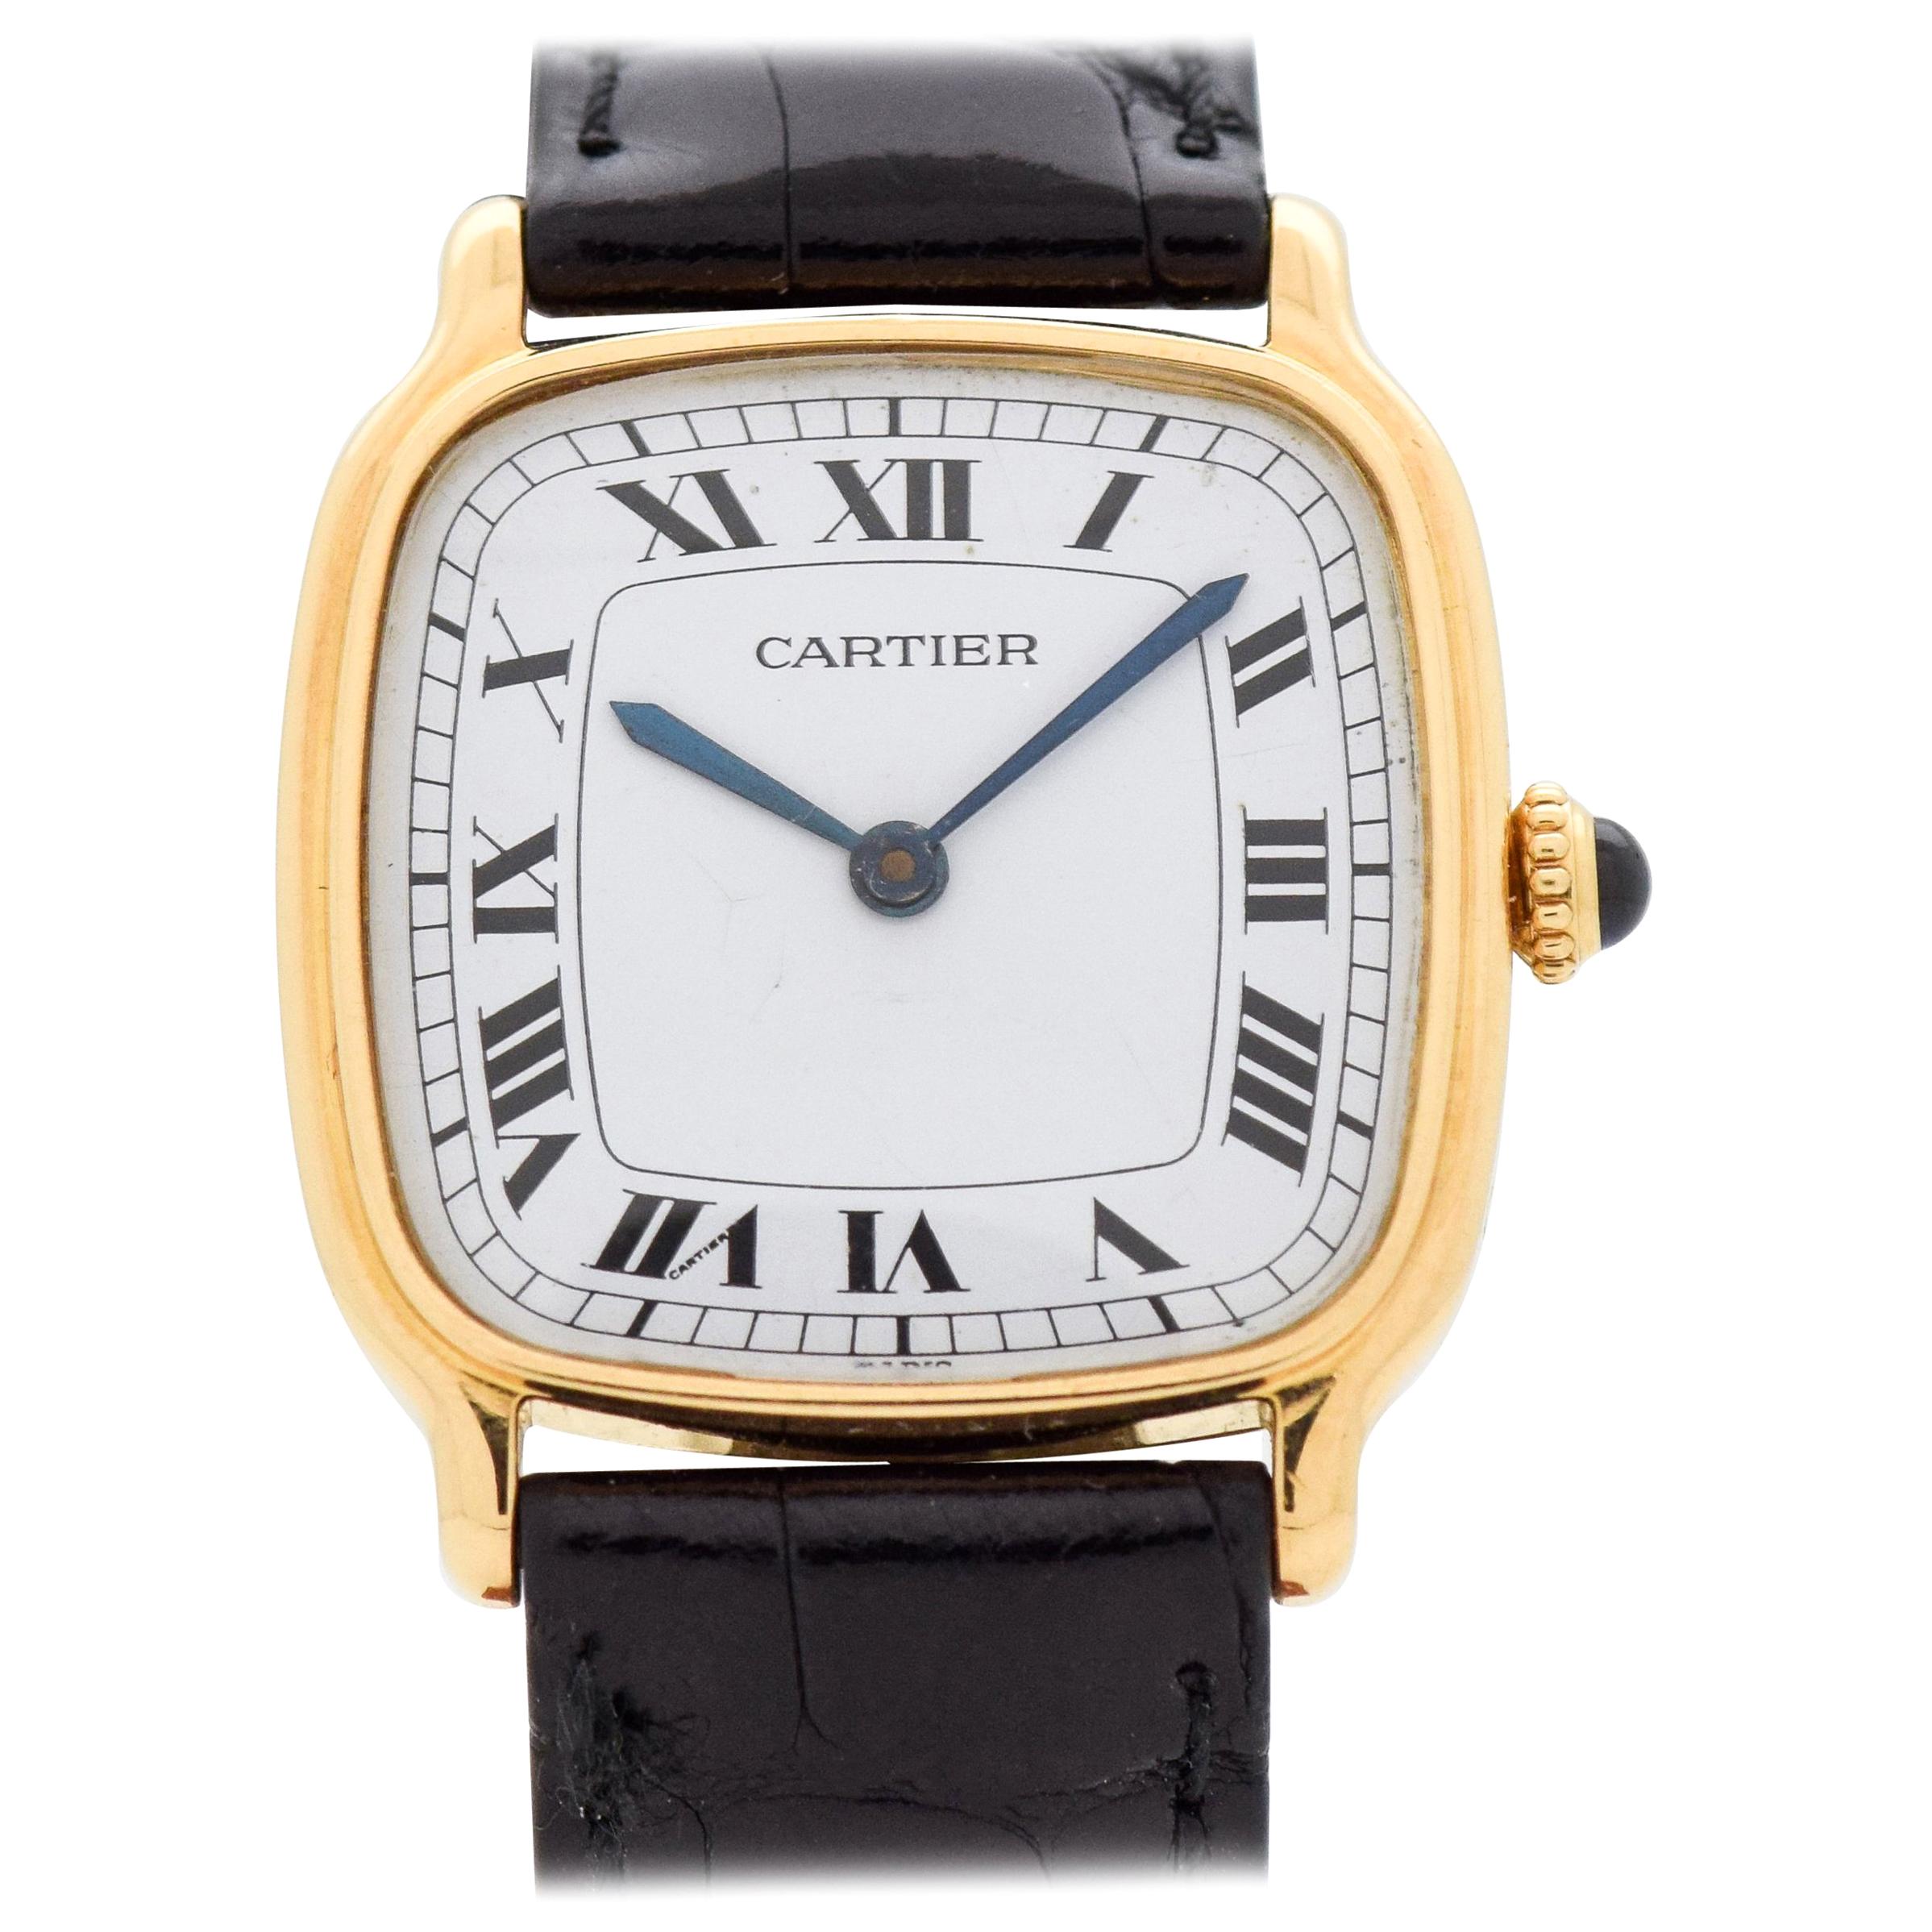 Cartier Cushion Shaped 18 Karat Yellow Gold Watch, 2010s